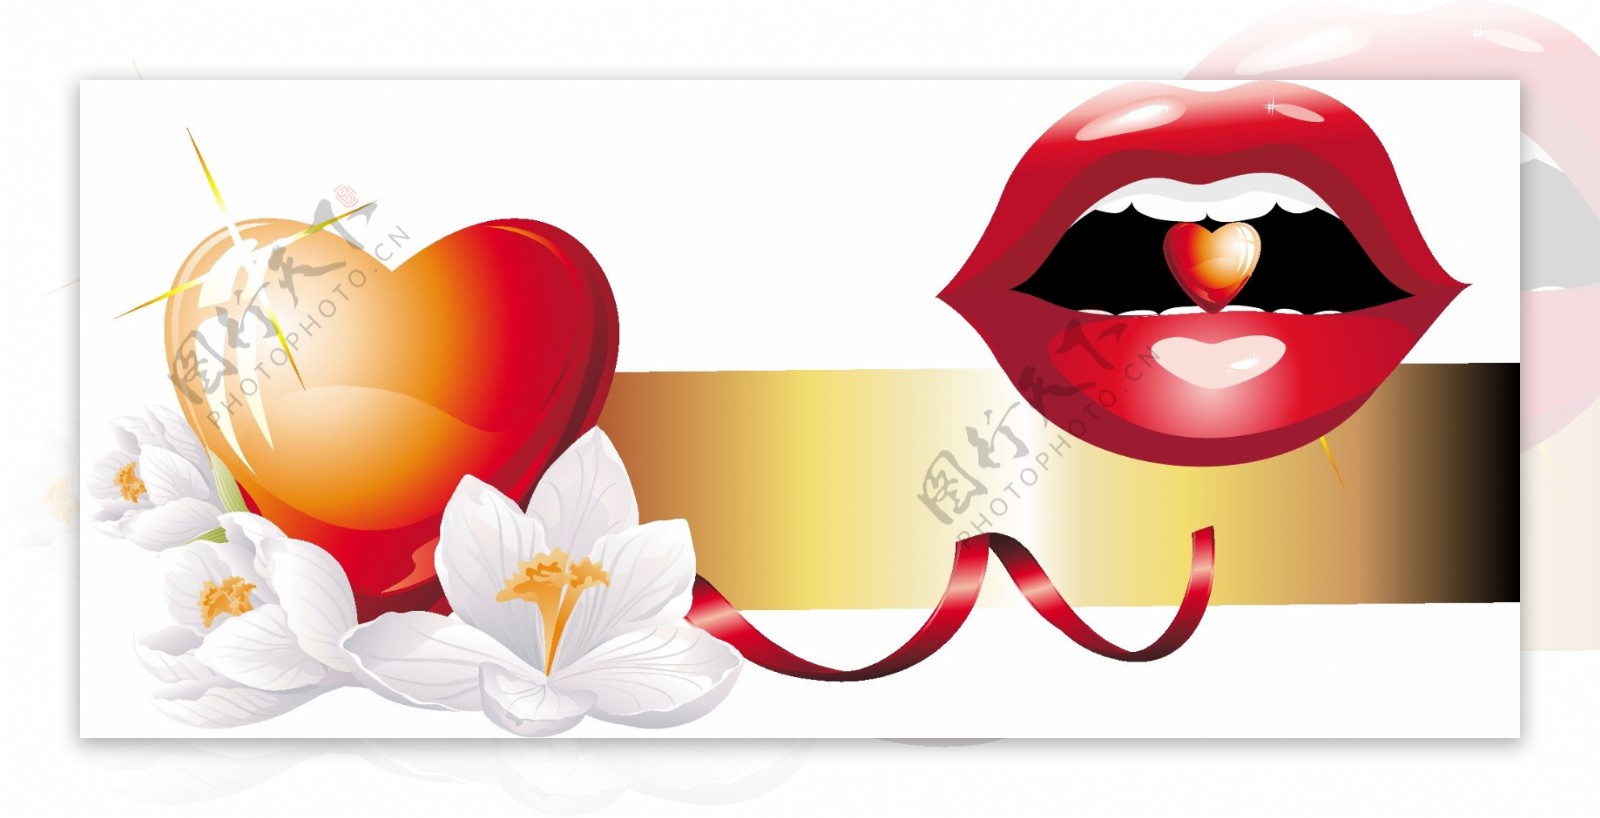 浪漫红色心形花朵嘴唇元素